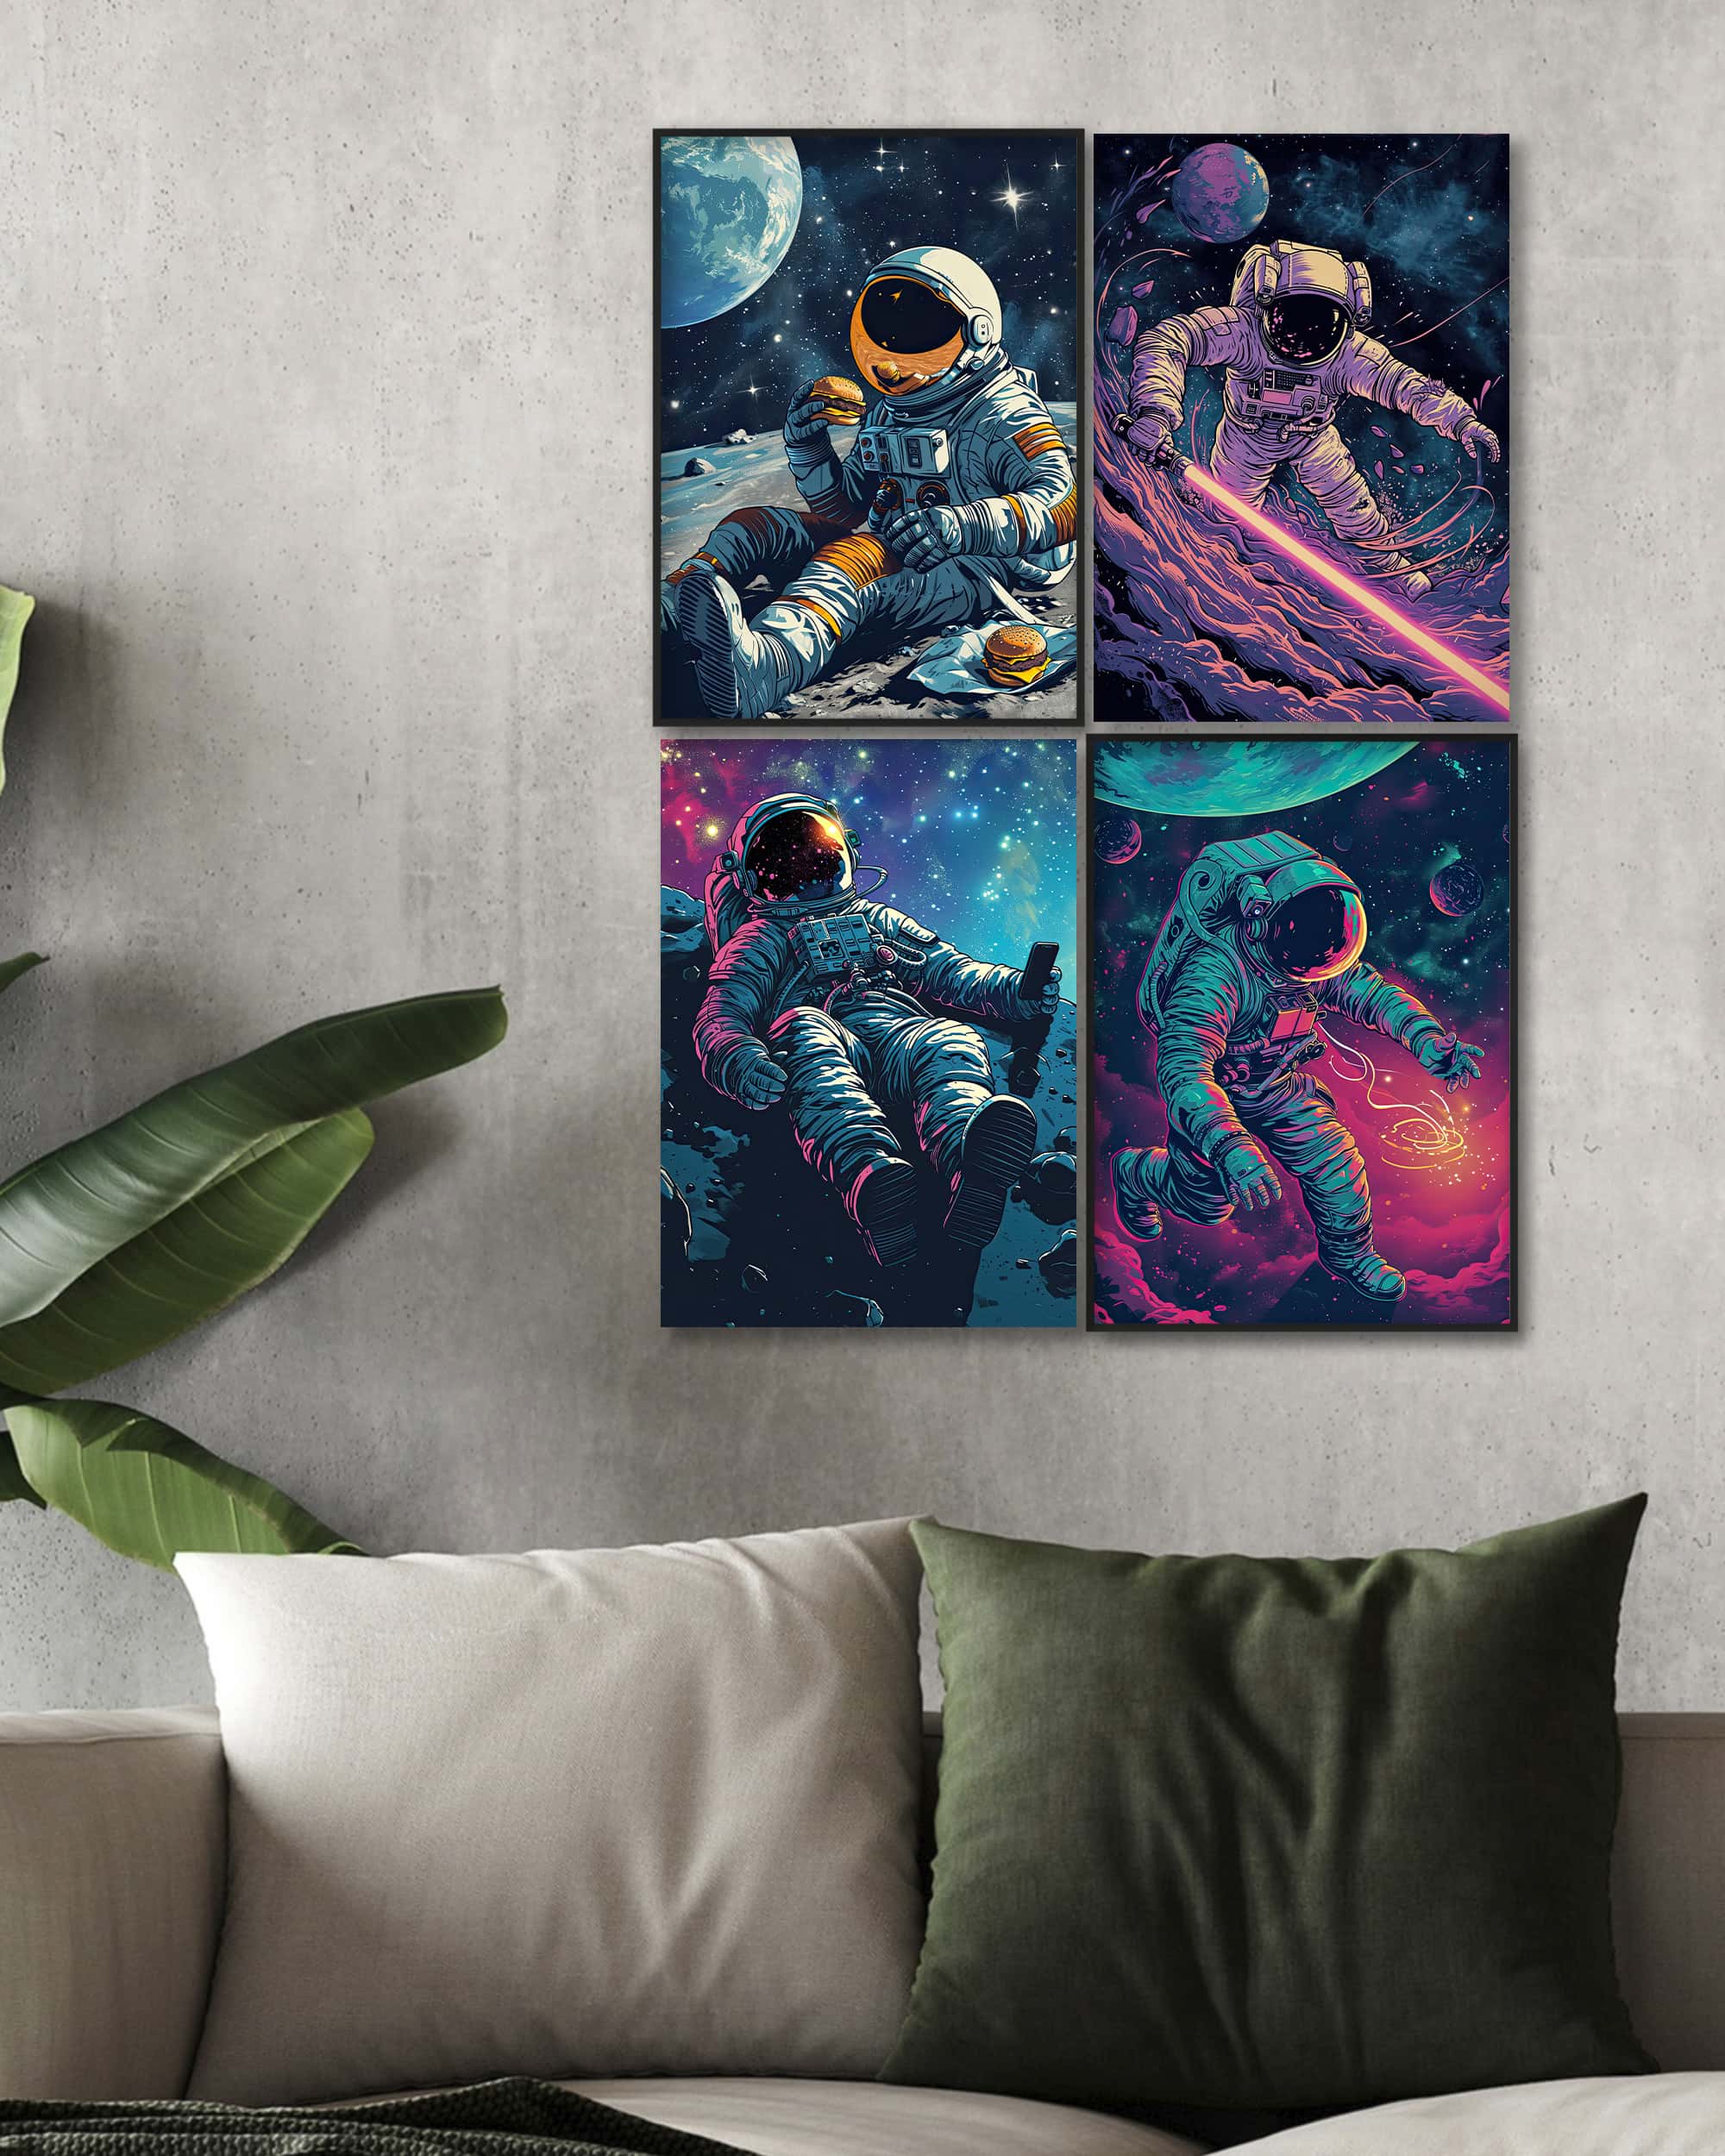 Lost in Space | Digital Poster Bundle